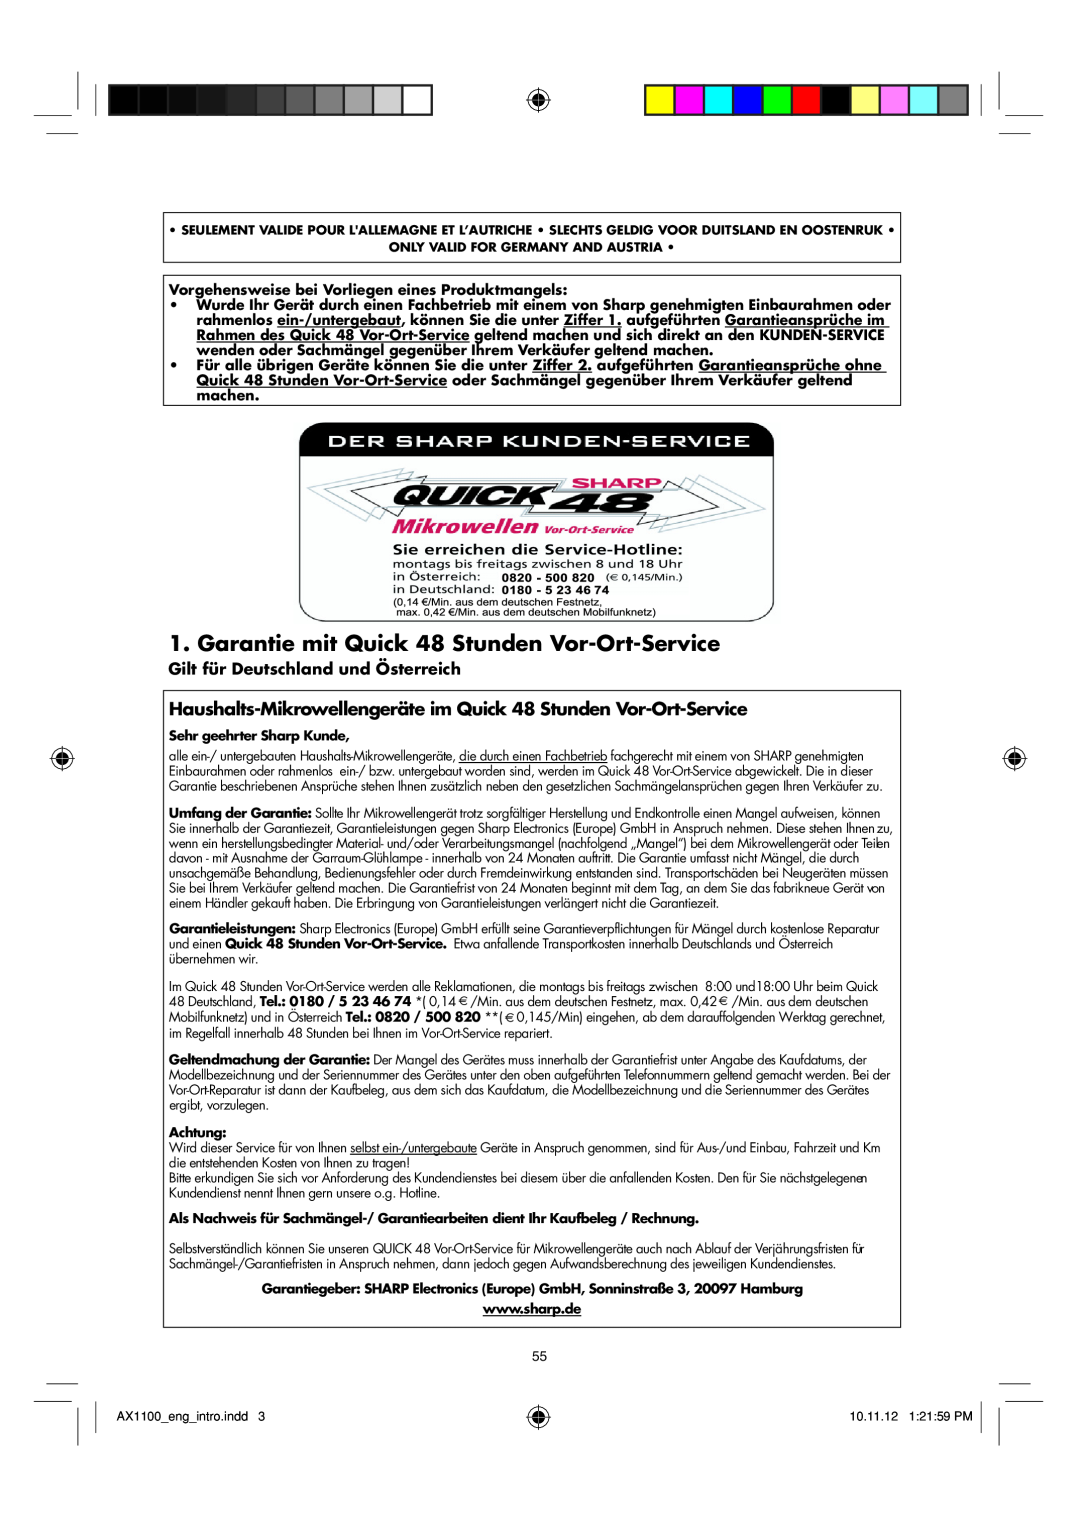 Sharp AX-1100 operation manual Garantie mit Quick 48 Stunden Vor-Ort-Service, Gilt für Deutschland und Österreich 